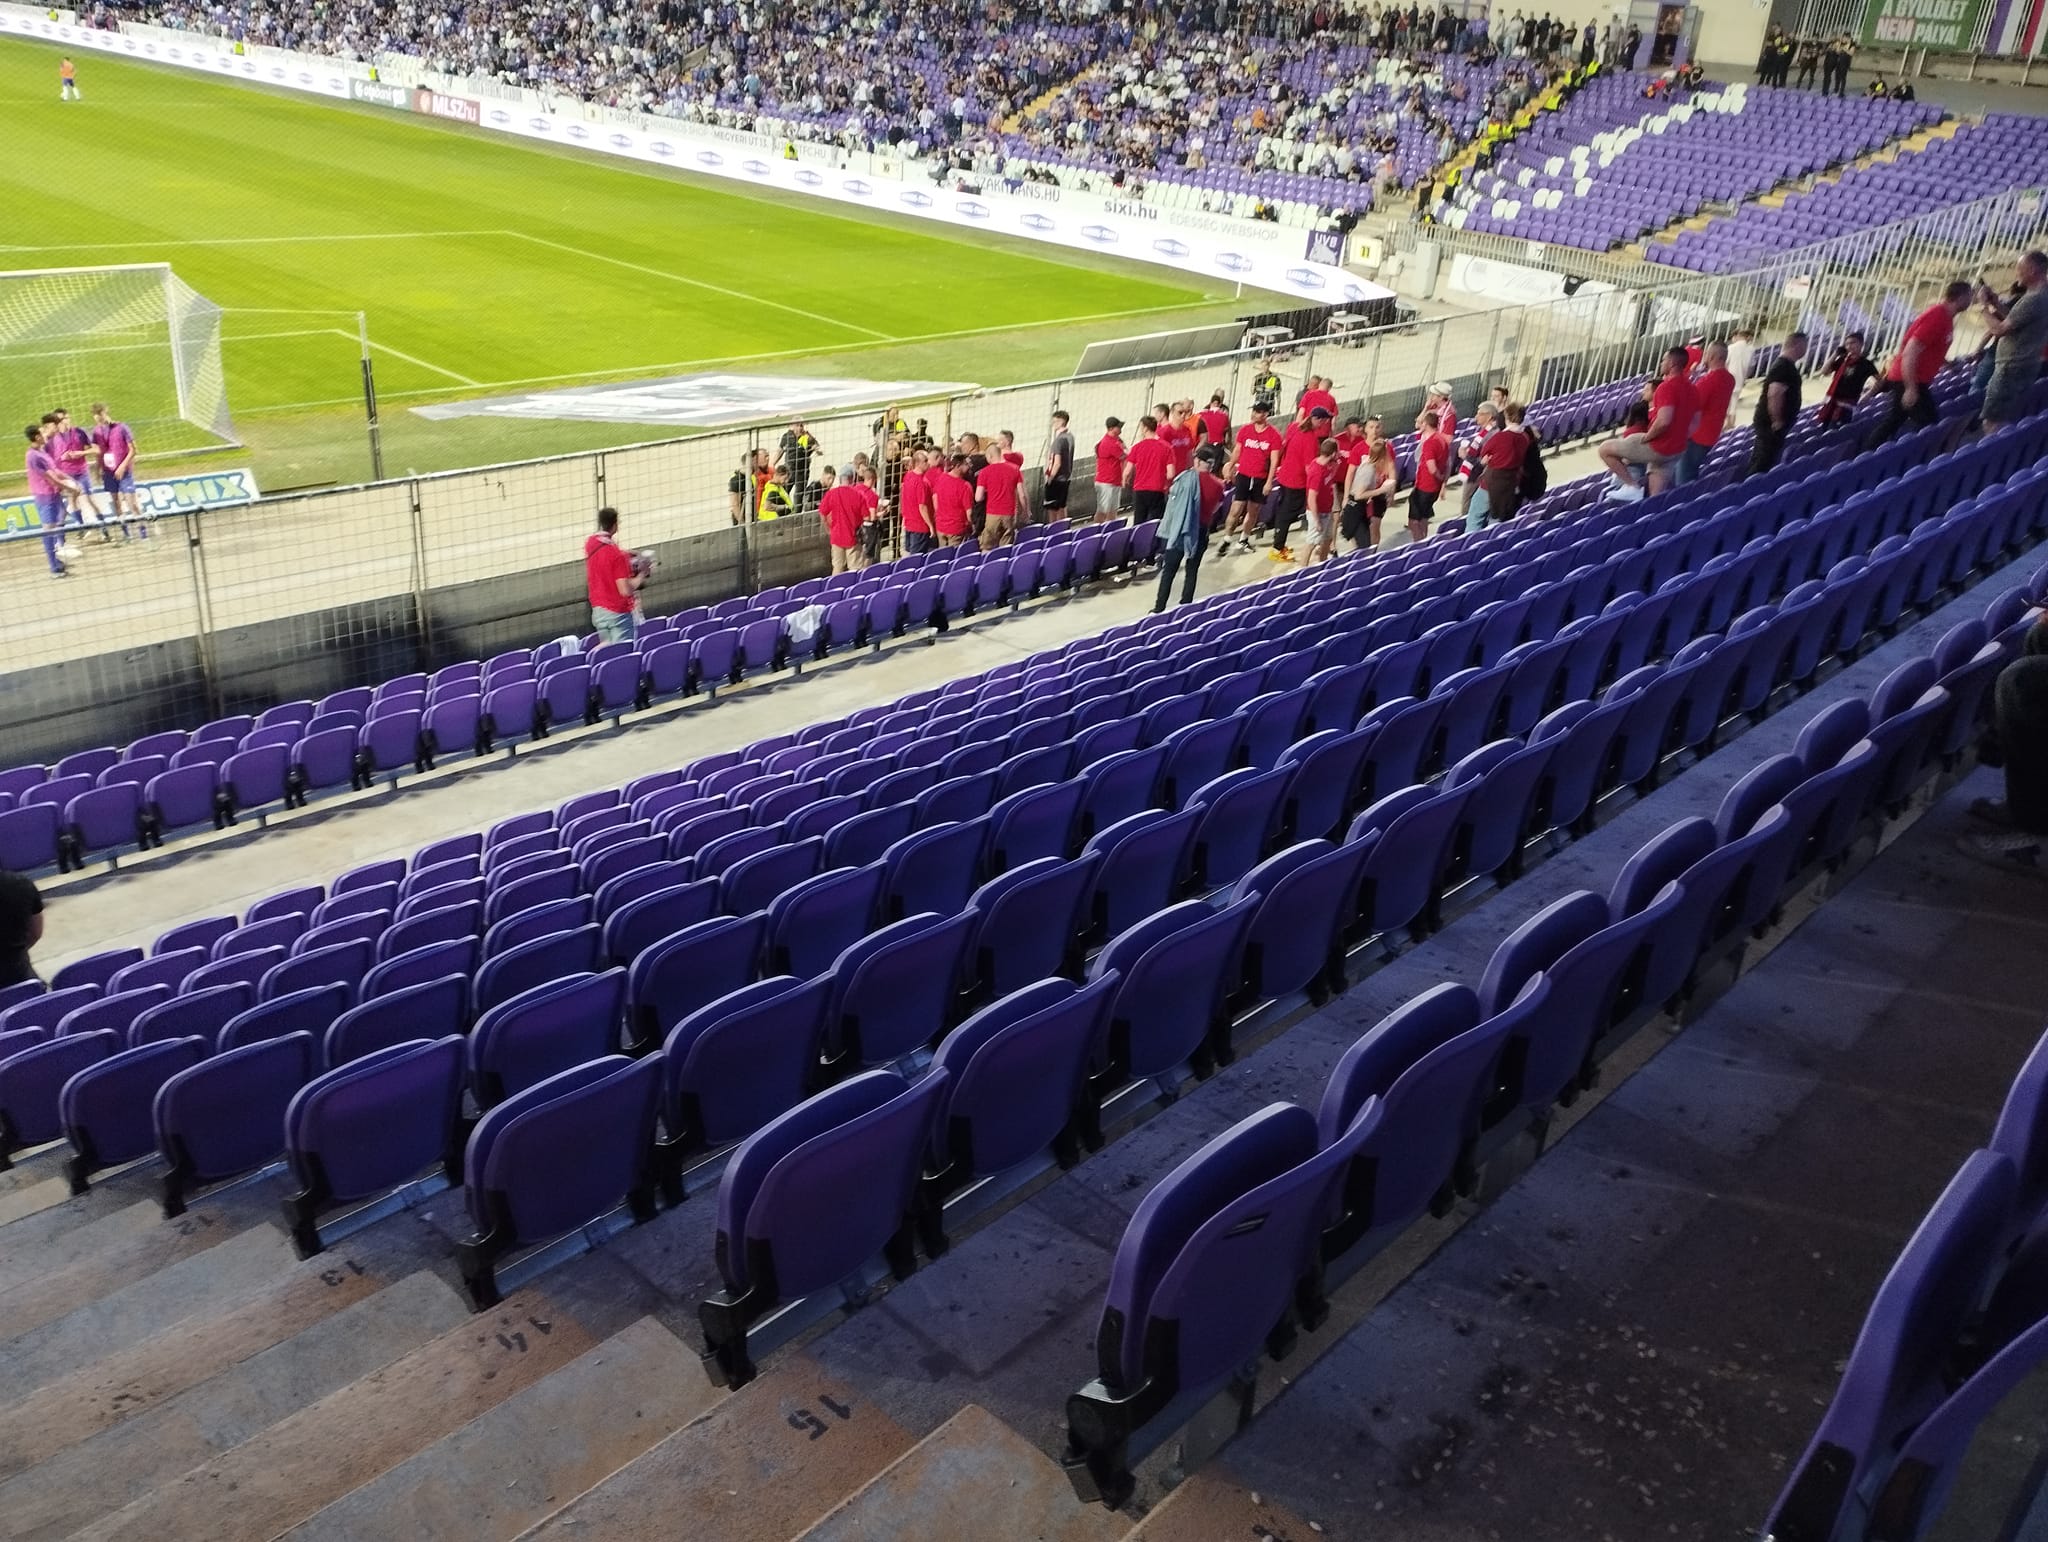 Újpest-DVTK: A 4-0-s első félidő után kivonultak a stadionból a Diósgyőr-szurkolók - fotók